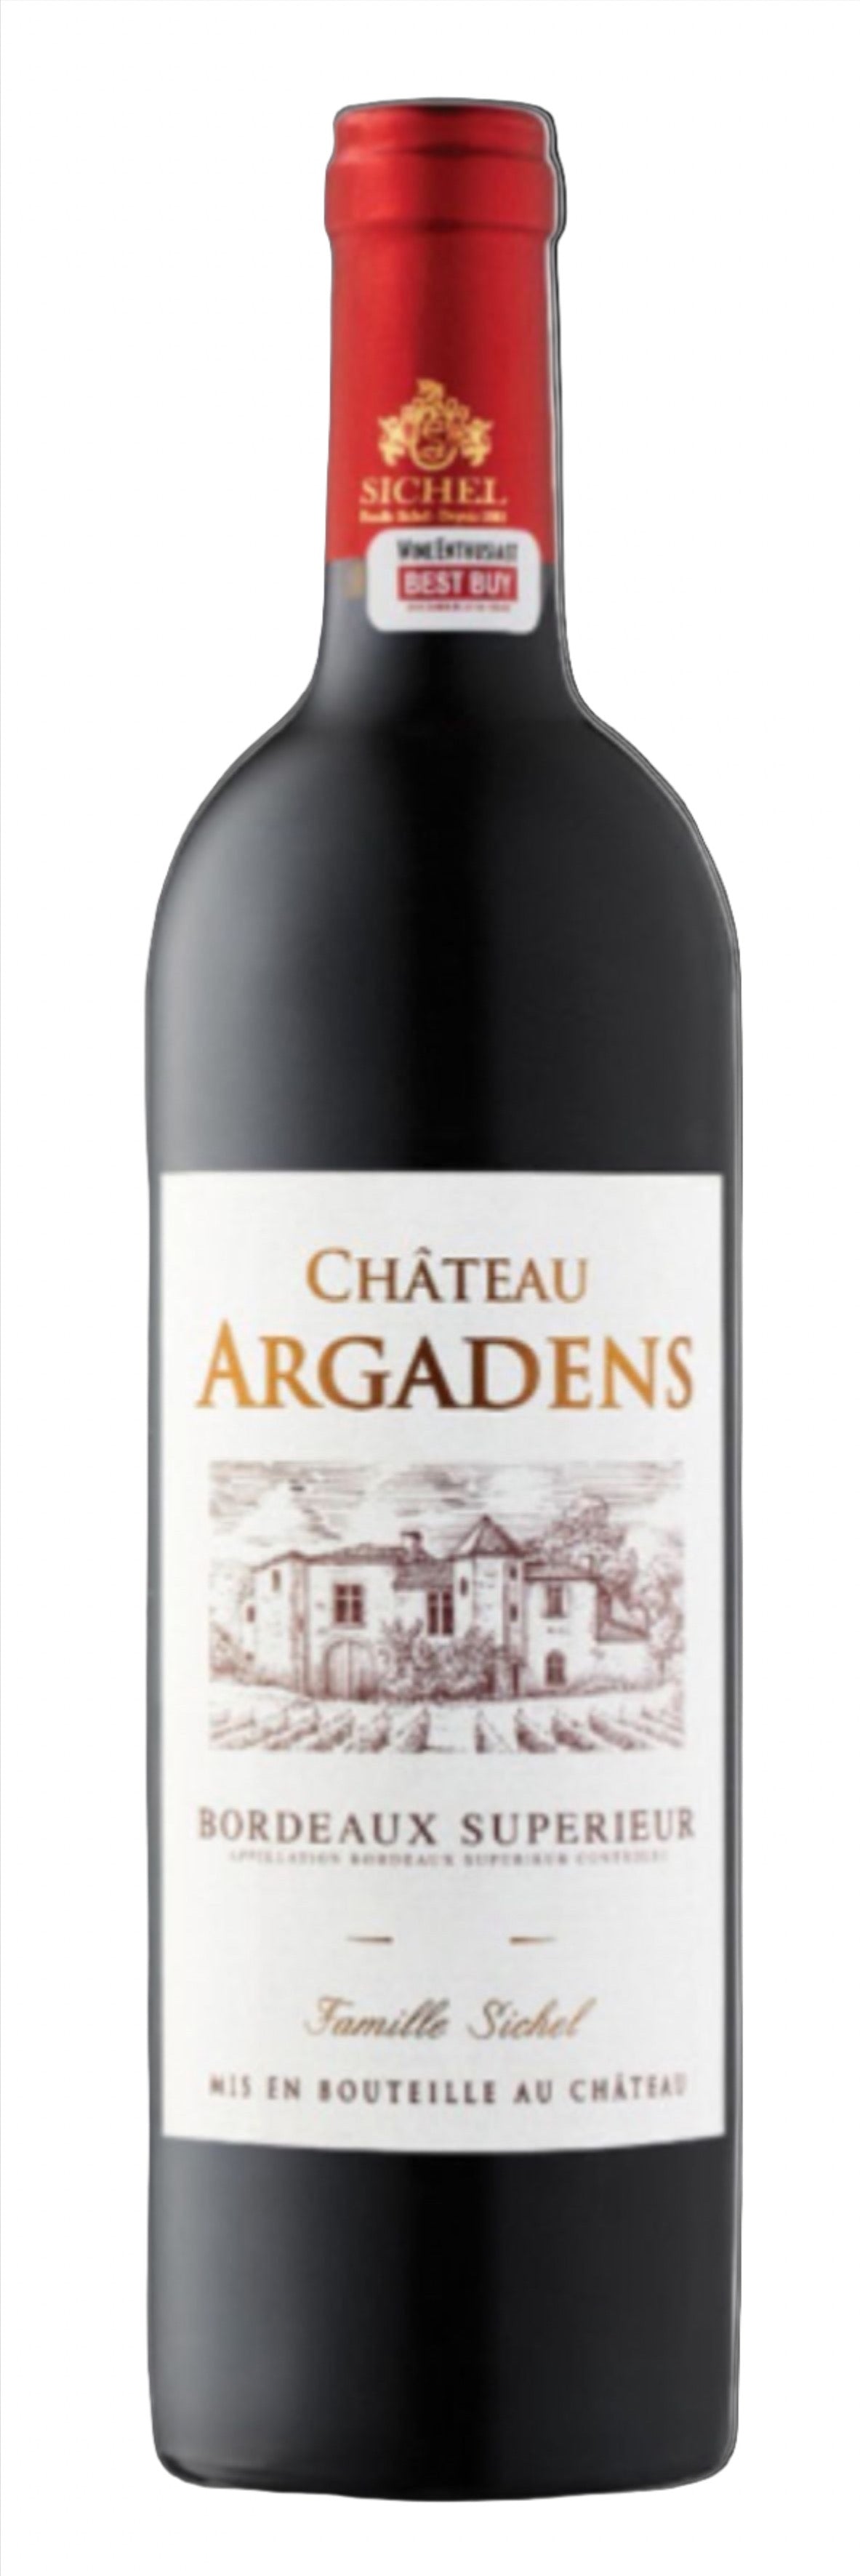 Château Argadens Bordeaux Supérieur